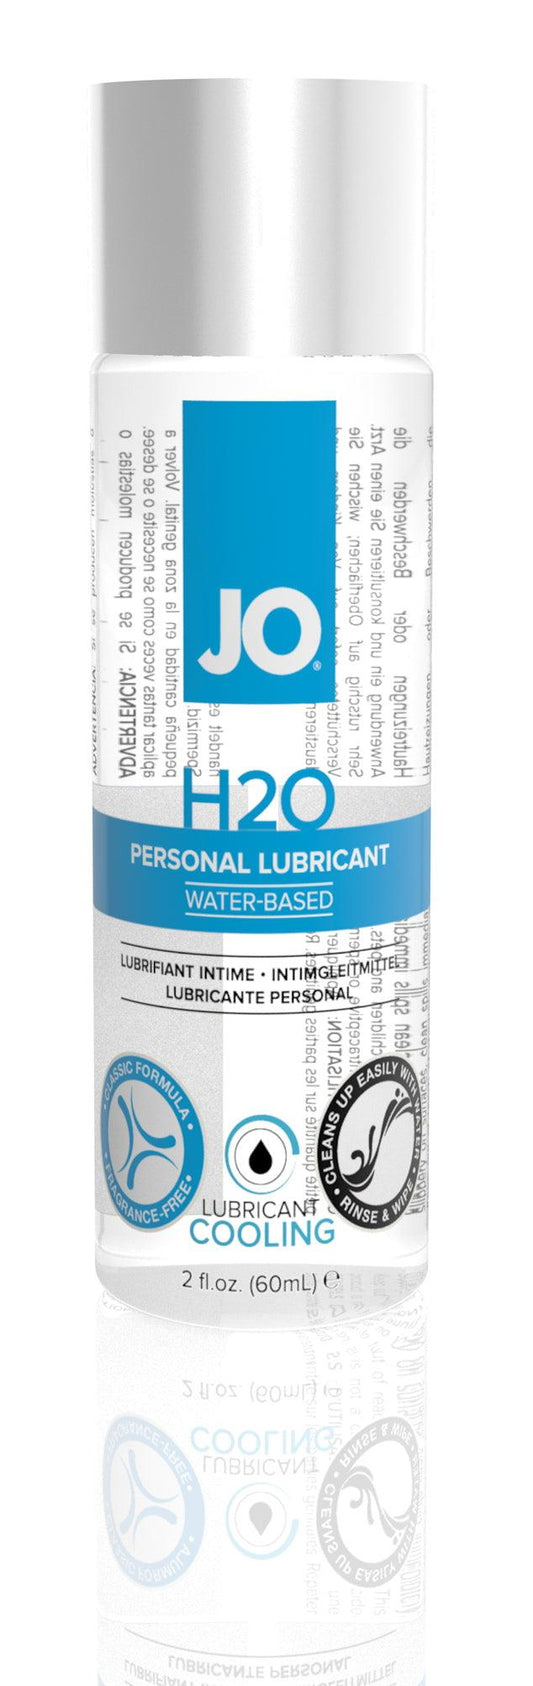 JO H2O Cool 2 Oz / 60 ml - Take A Peek